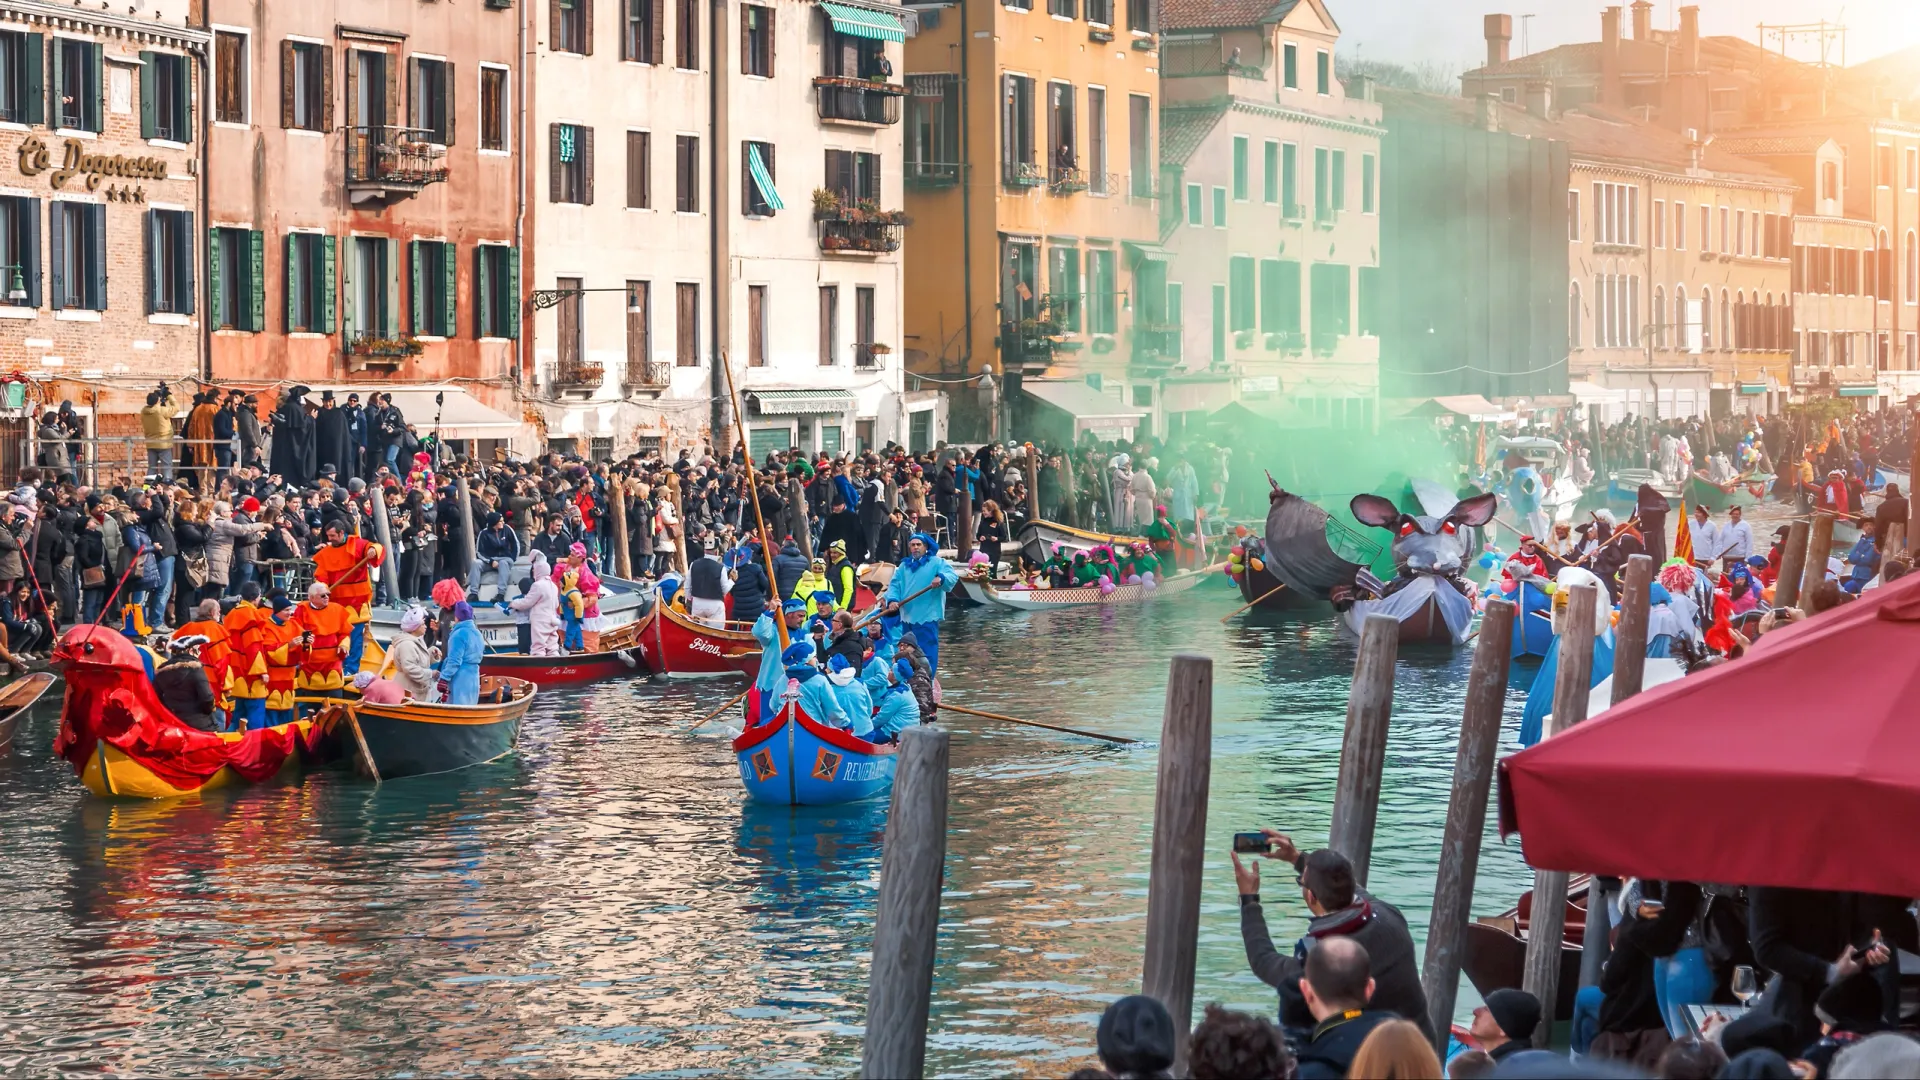 Гондола в форме крысы напоминает о тяжелых временах в истории Венеции. Фото: Toniki / Shutterstock / Fotodom